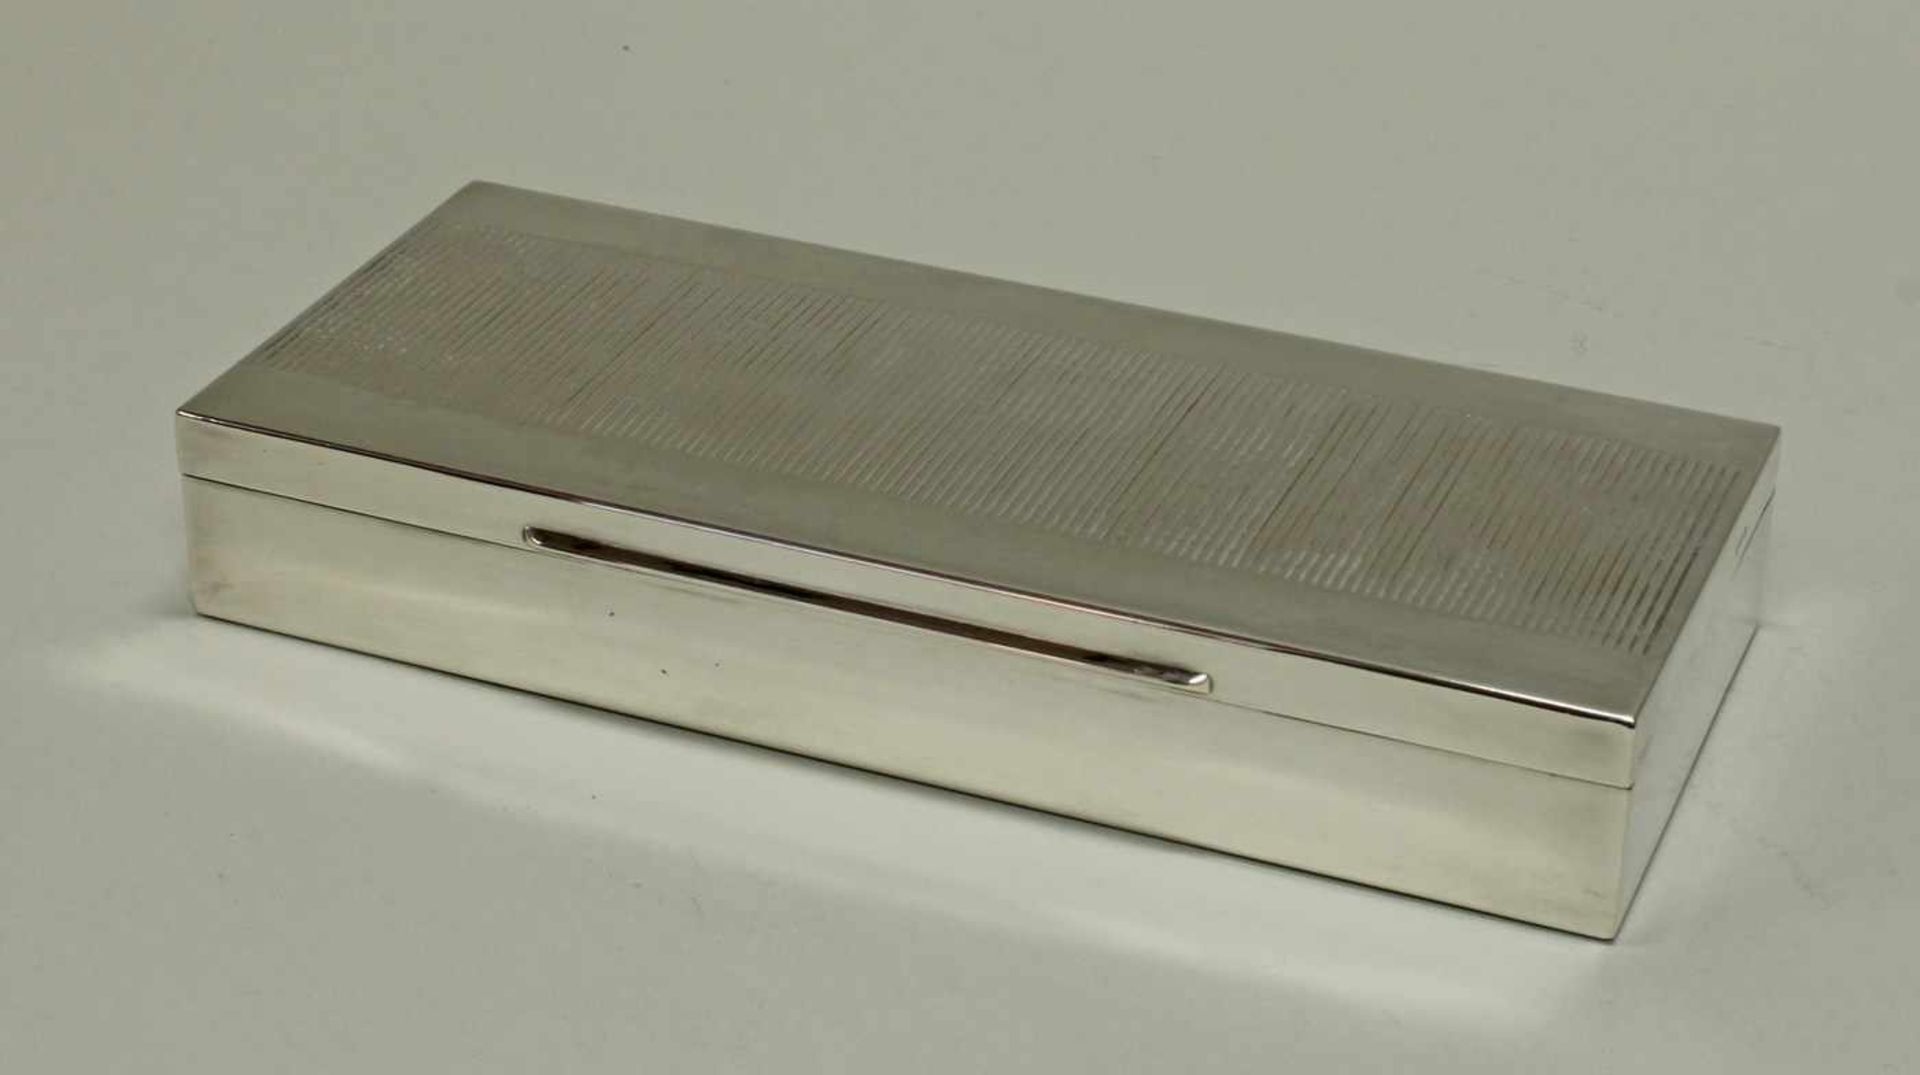 Zigarettendose, Silber 835, Lutz & Weiß, Deckel mit Rillendekor, Inneres und Boden aus Holz, 3.5 x - Image 2 of 2